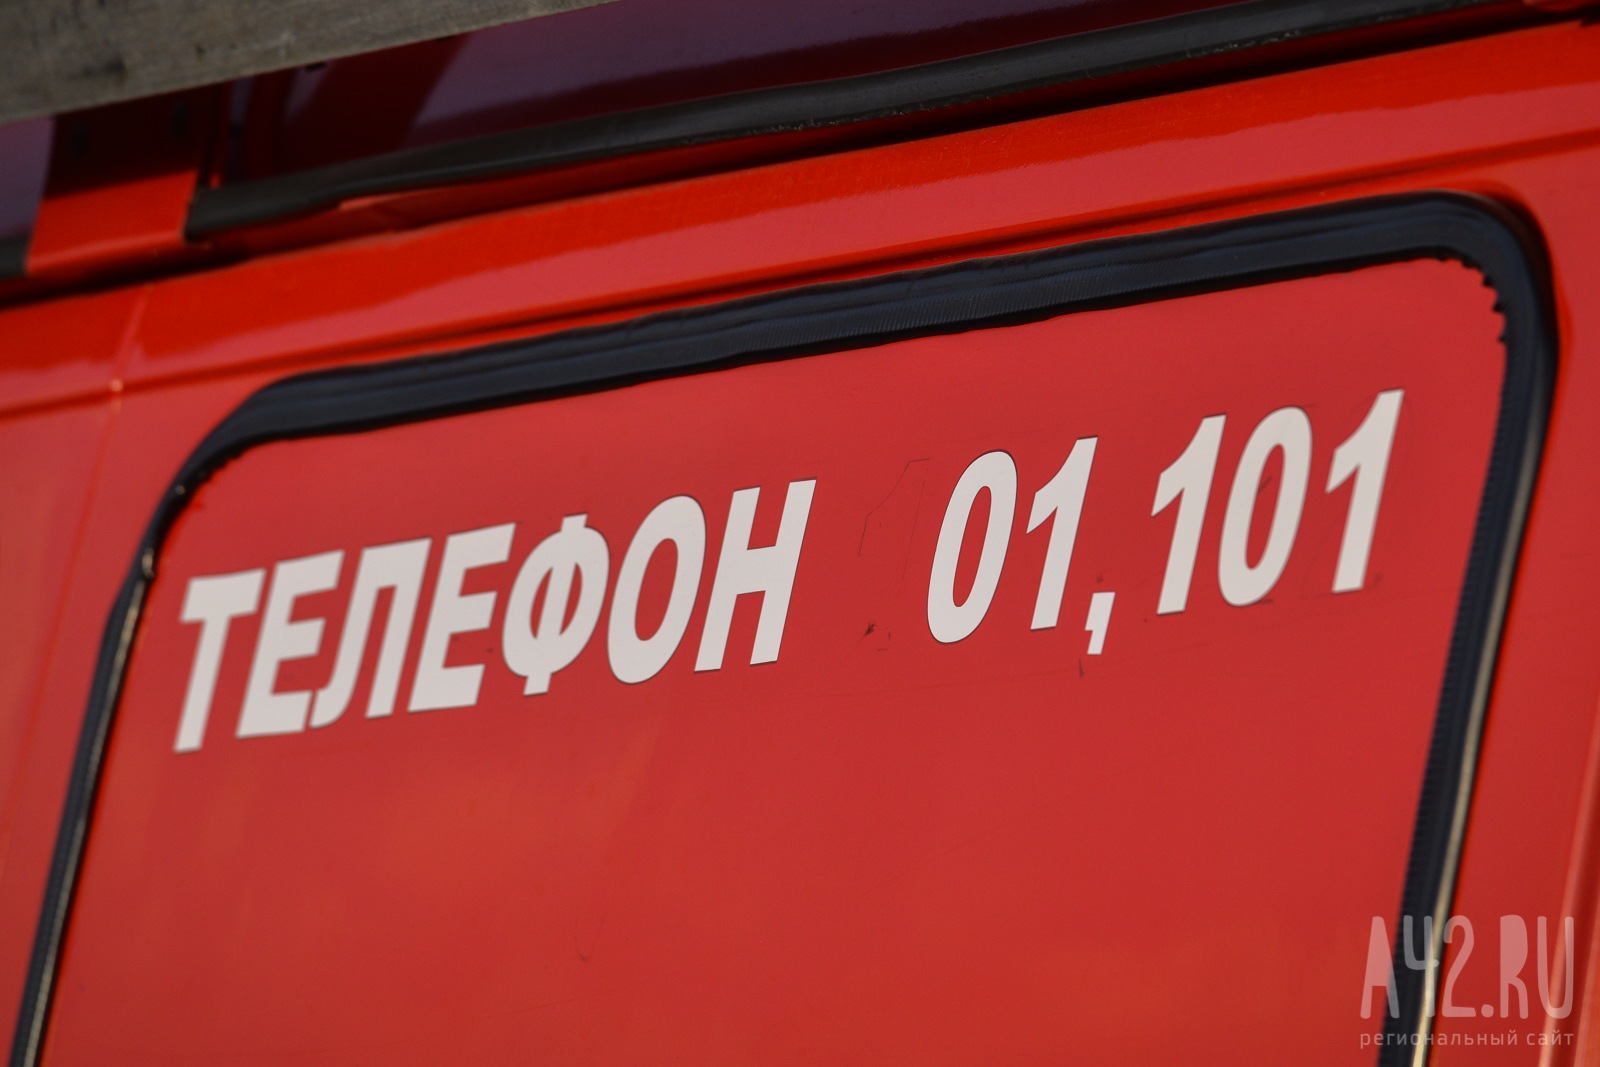 Более десятка пожаров произошло в Кузбассе за минувшие сутки